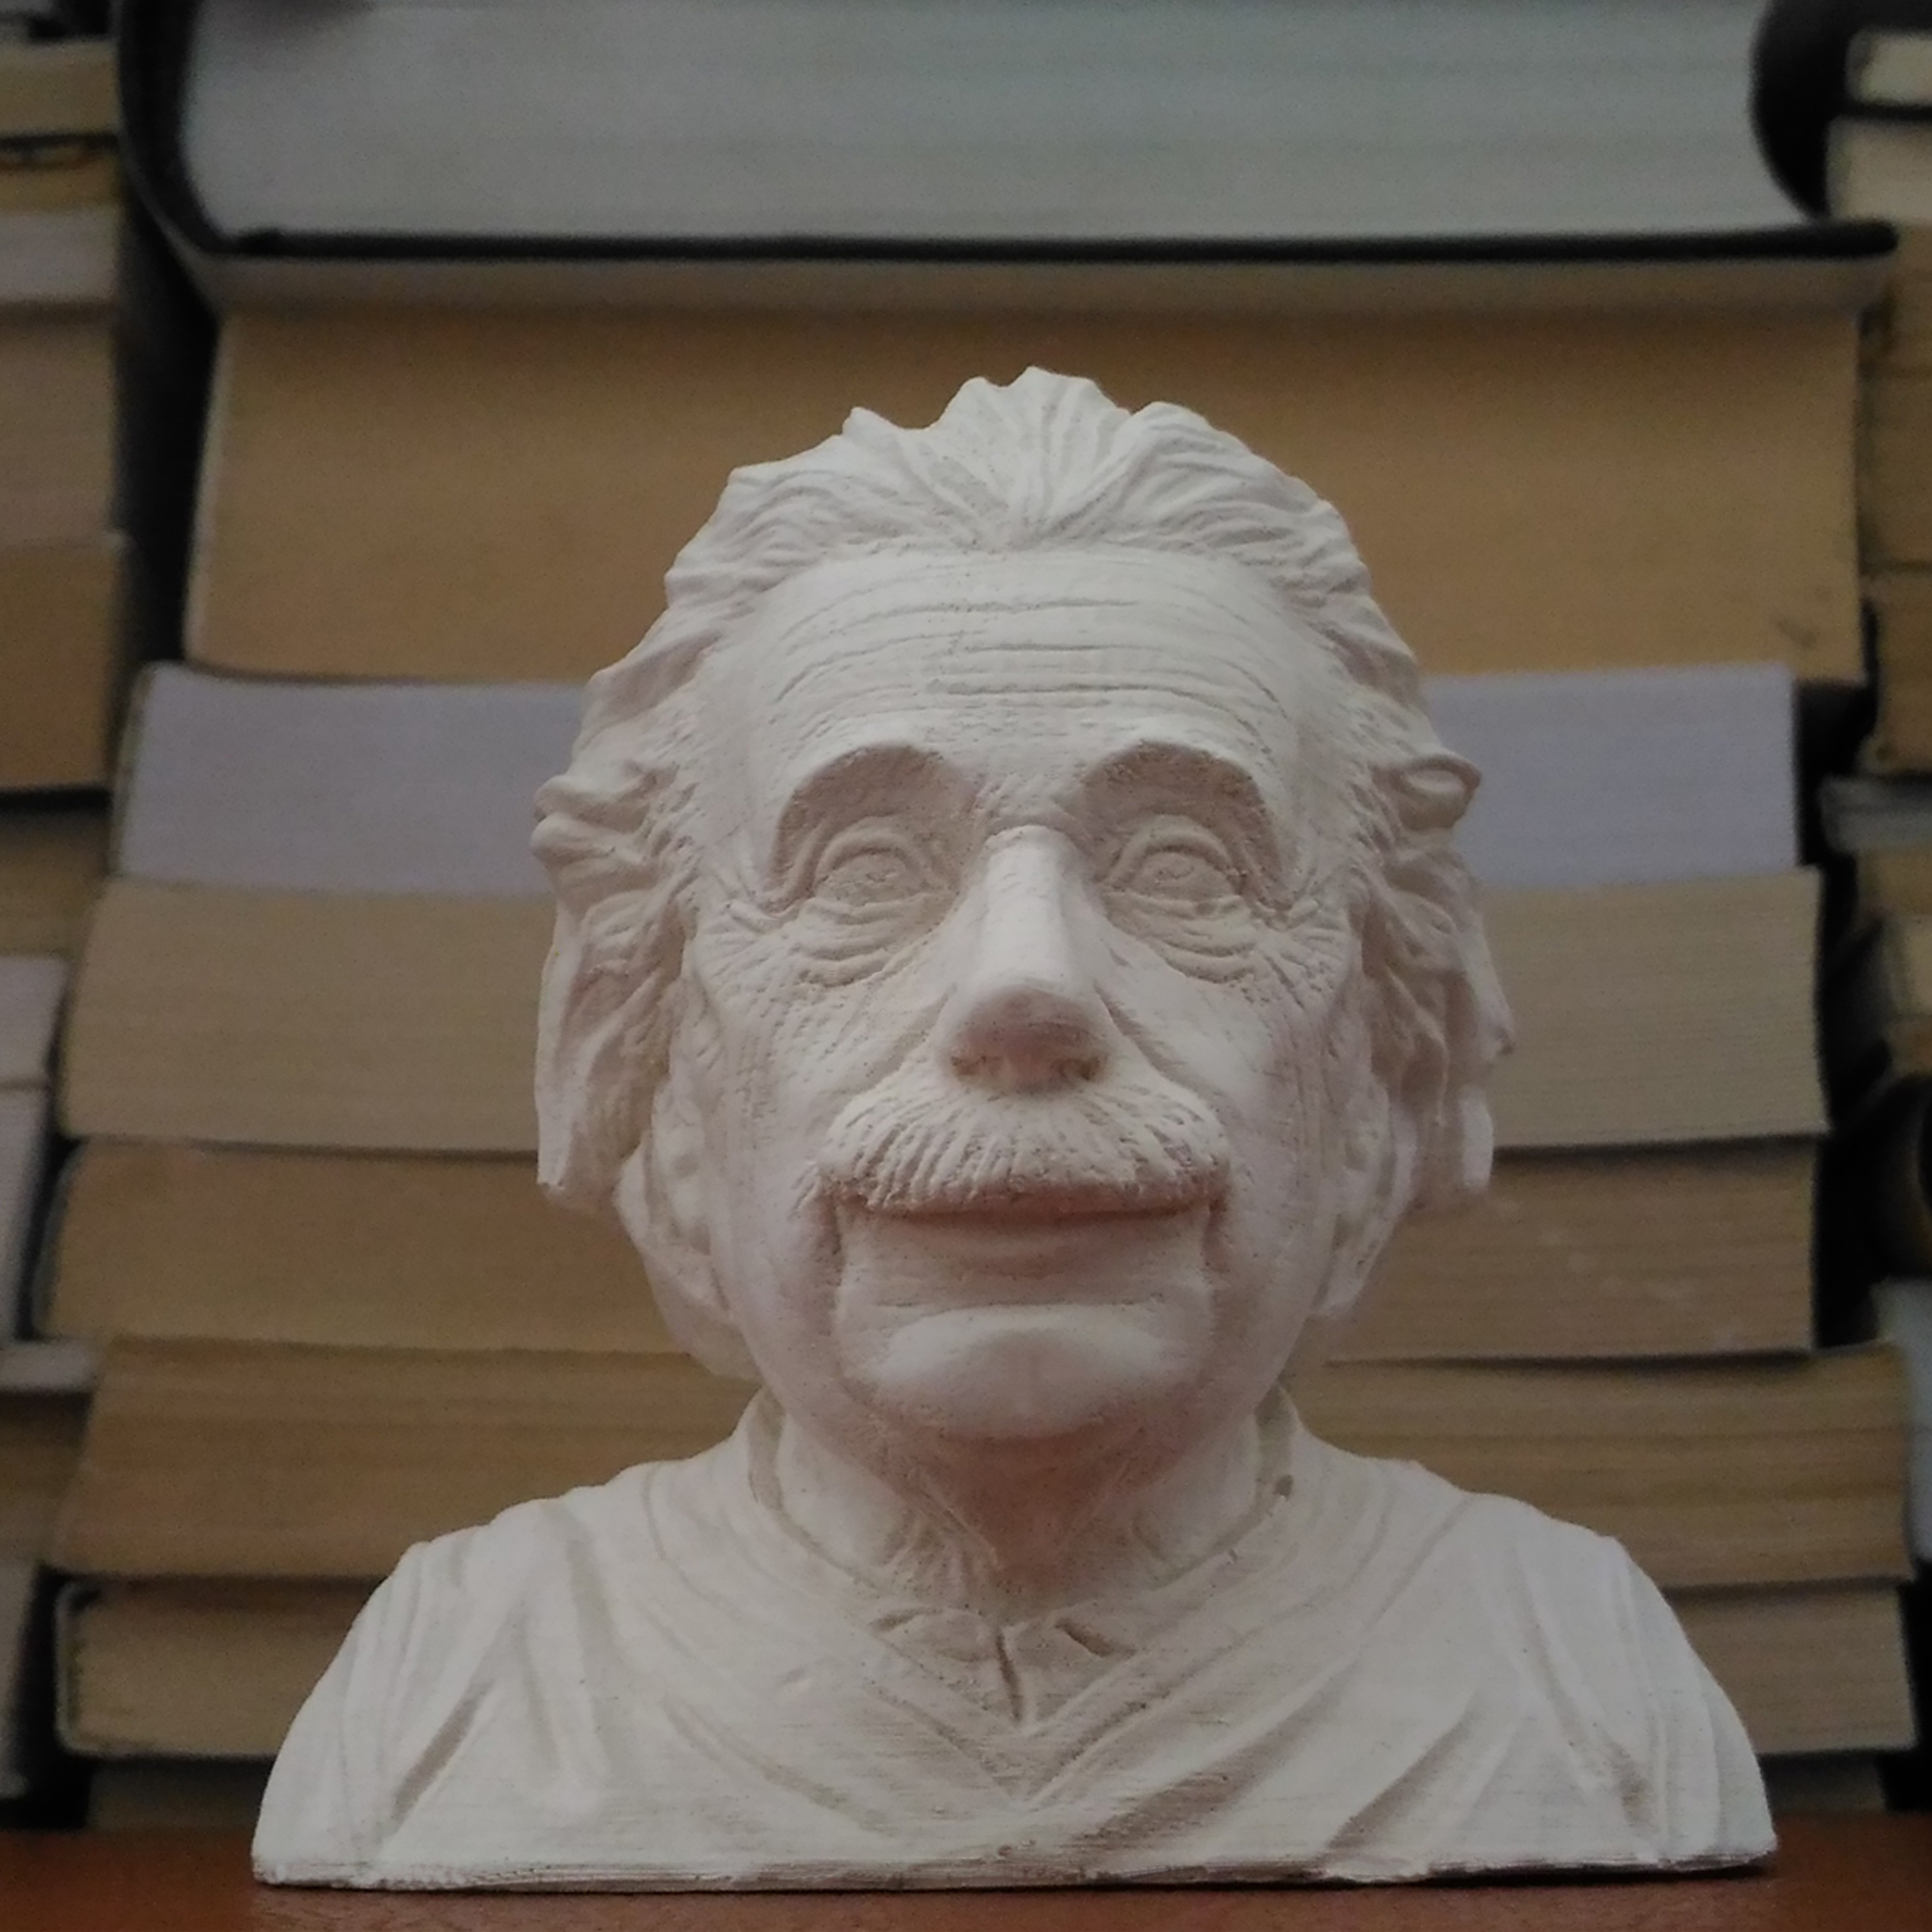 مجسمه طرح آلبرت اینشتین مدل x1015